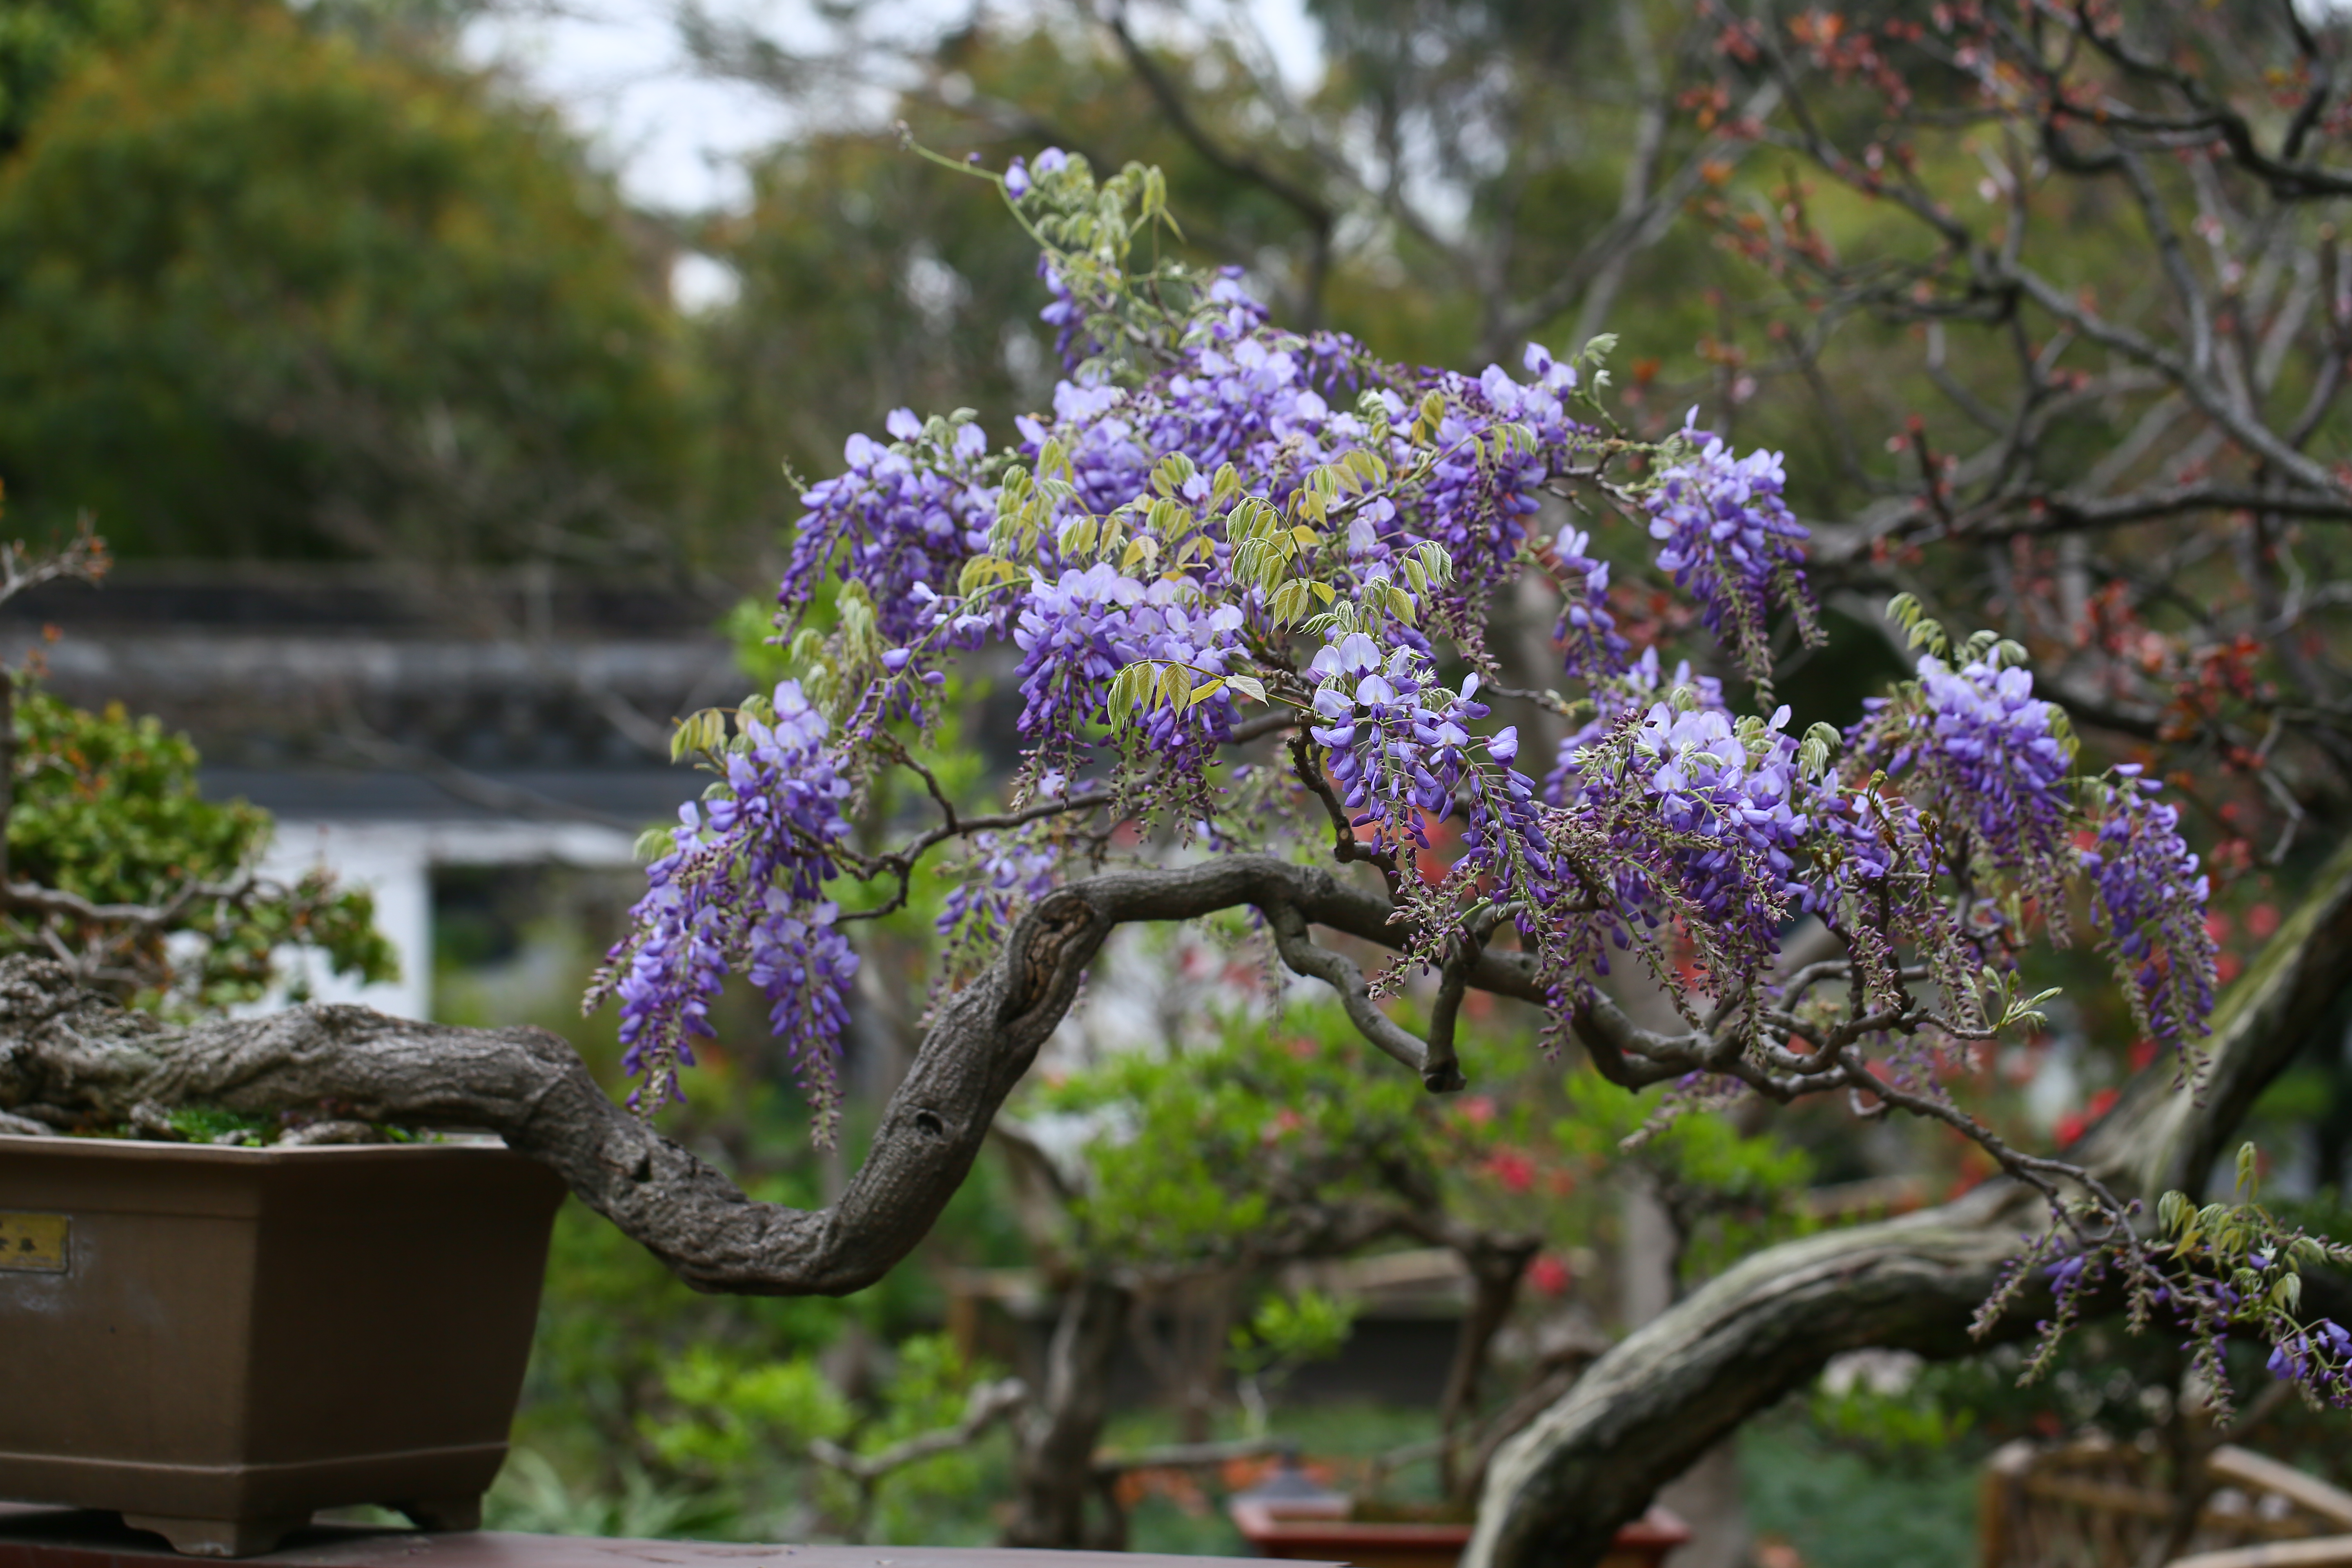 紫藤是豆科,紫藤属,落叶攀援缠绕性藤本,紫藤为长寿树种,树龄可达千年